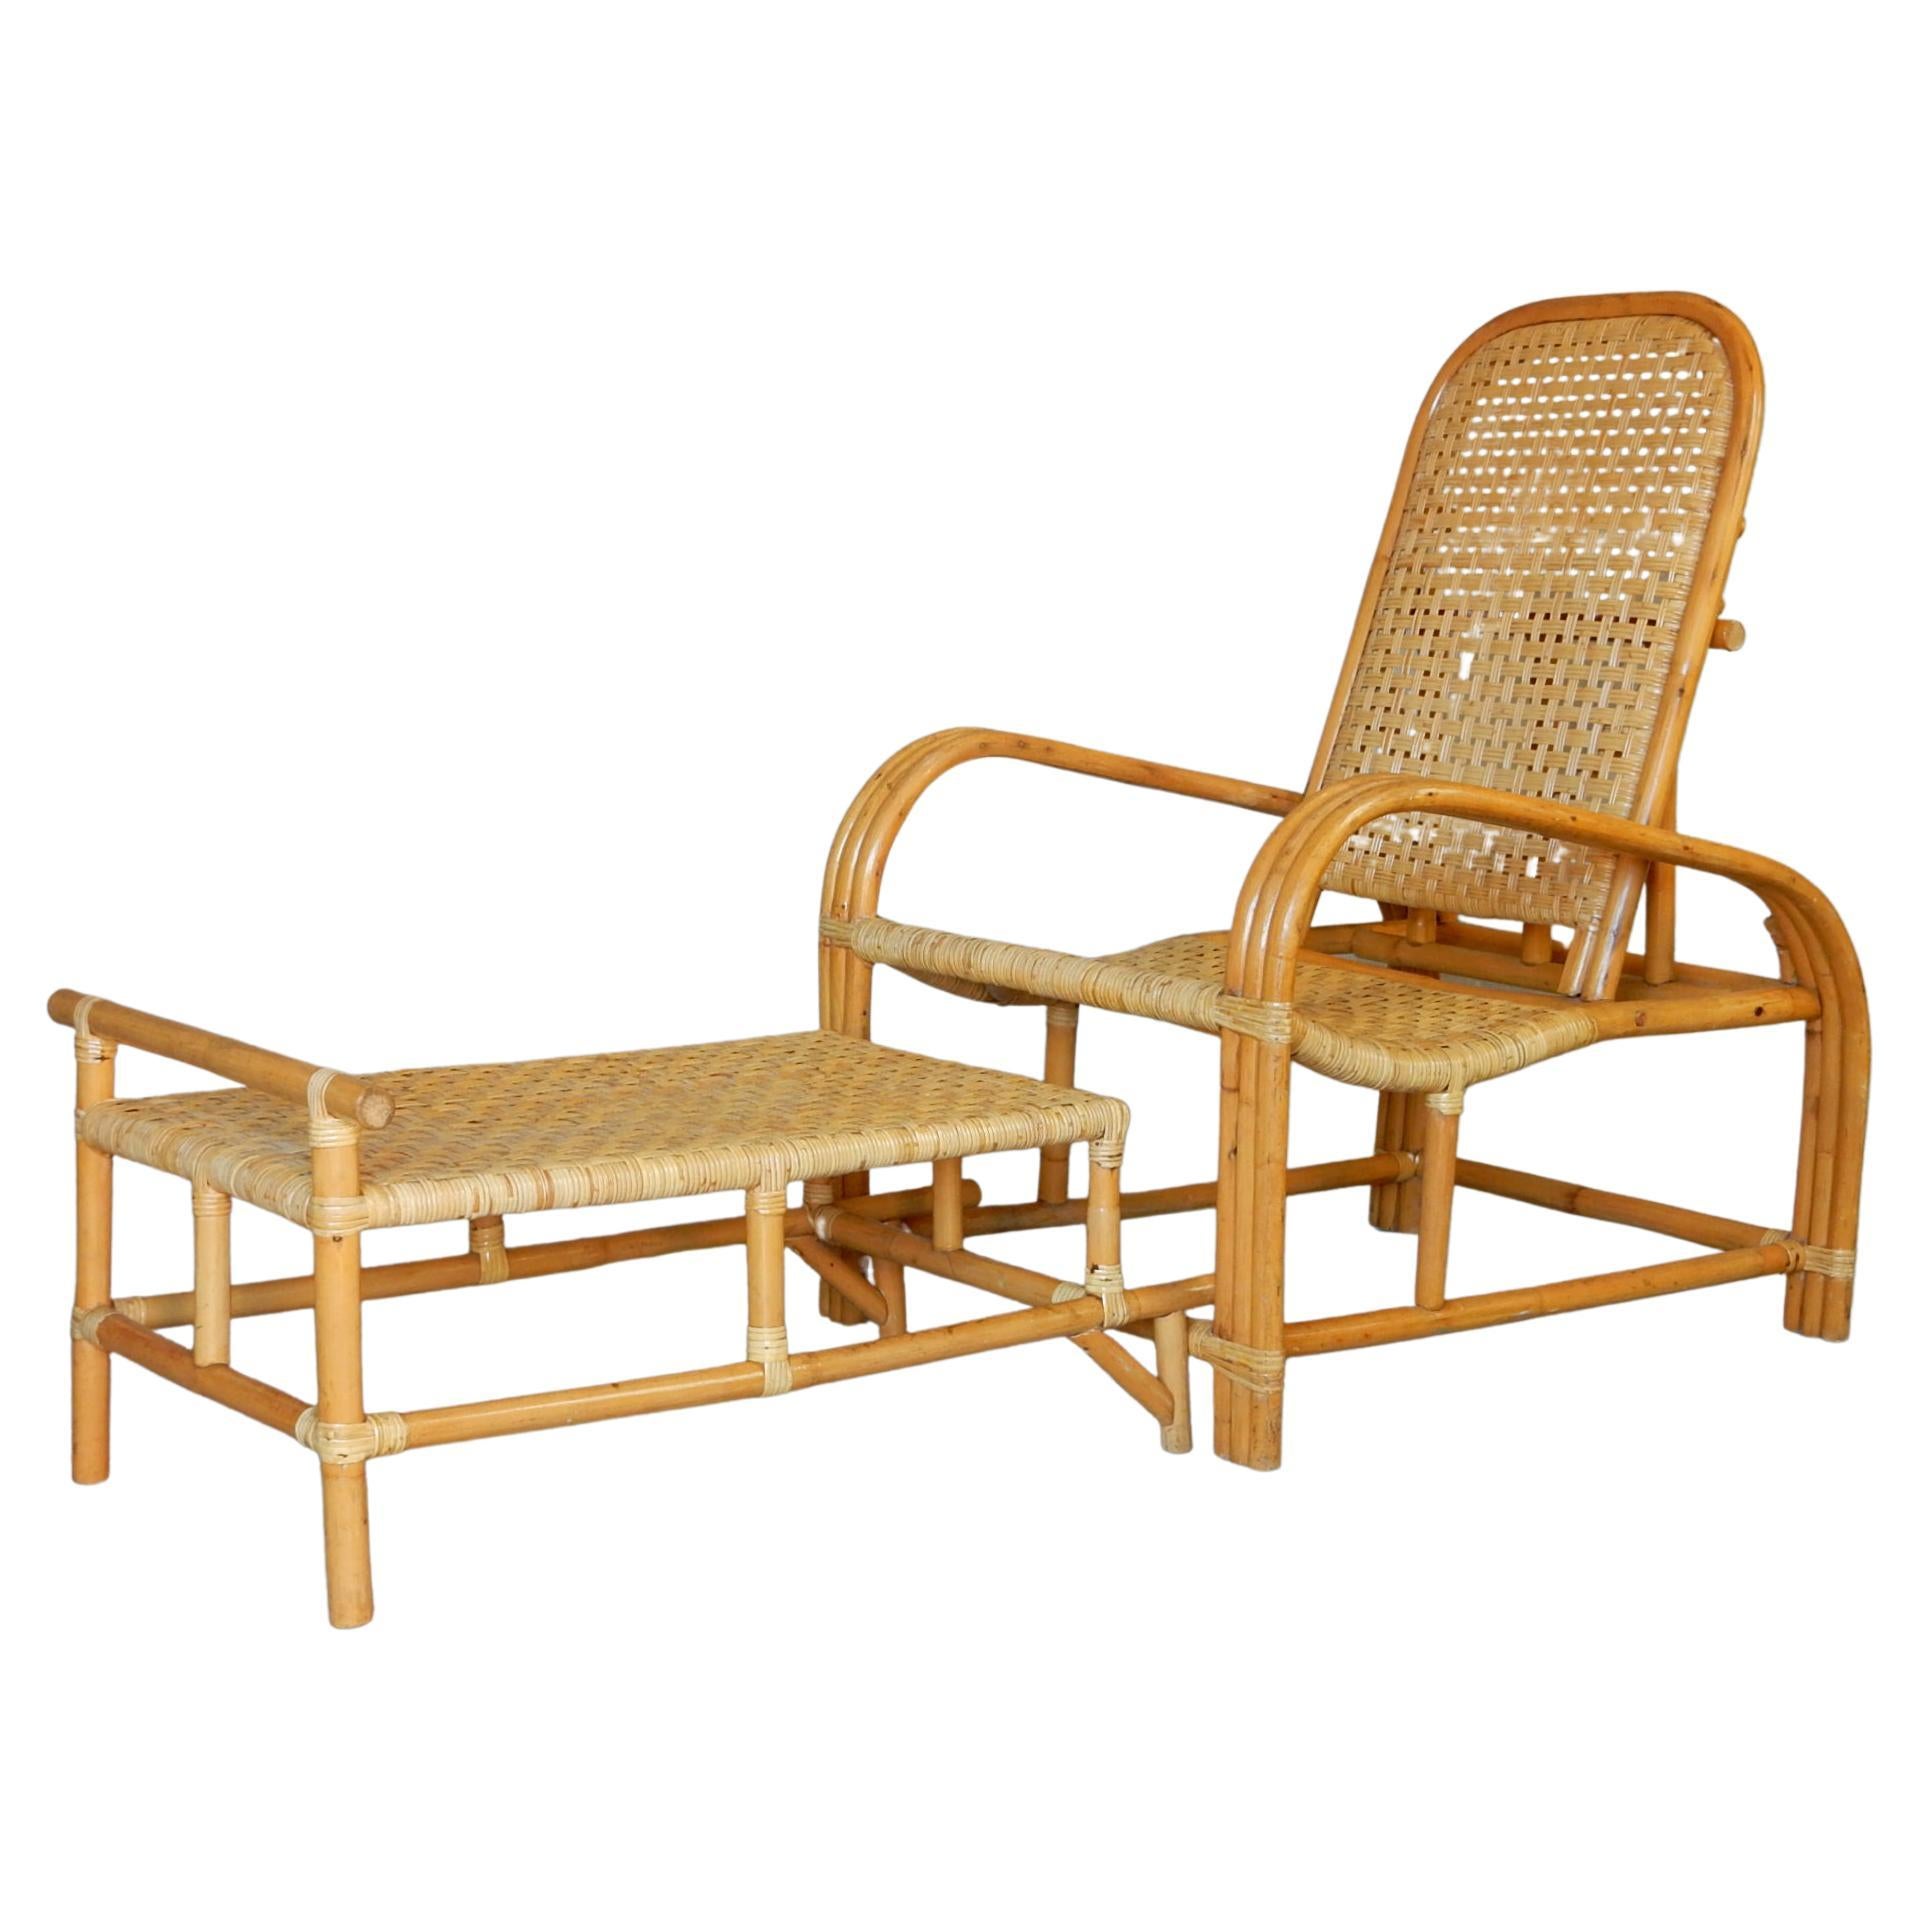 Im Stil von Paul Laszlo Design dieser schönen Vintage Rattan und geflochtene Schilfrohr Lounge-Sessel mit Ottomane.
3 gebänderte Armlehnen mit Sitzfläche, Rückenlehne und Fußstütze aus geflochtenem Schilfrohr.
Die Ottomane lässt sich an der